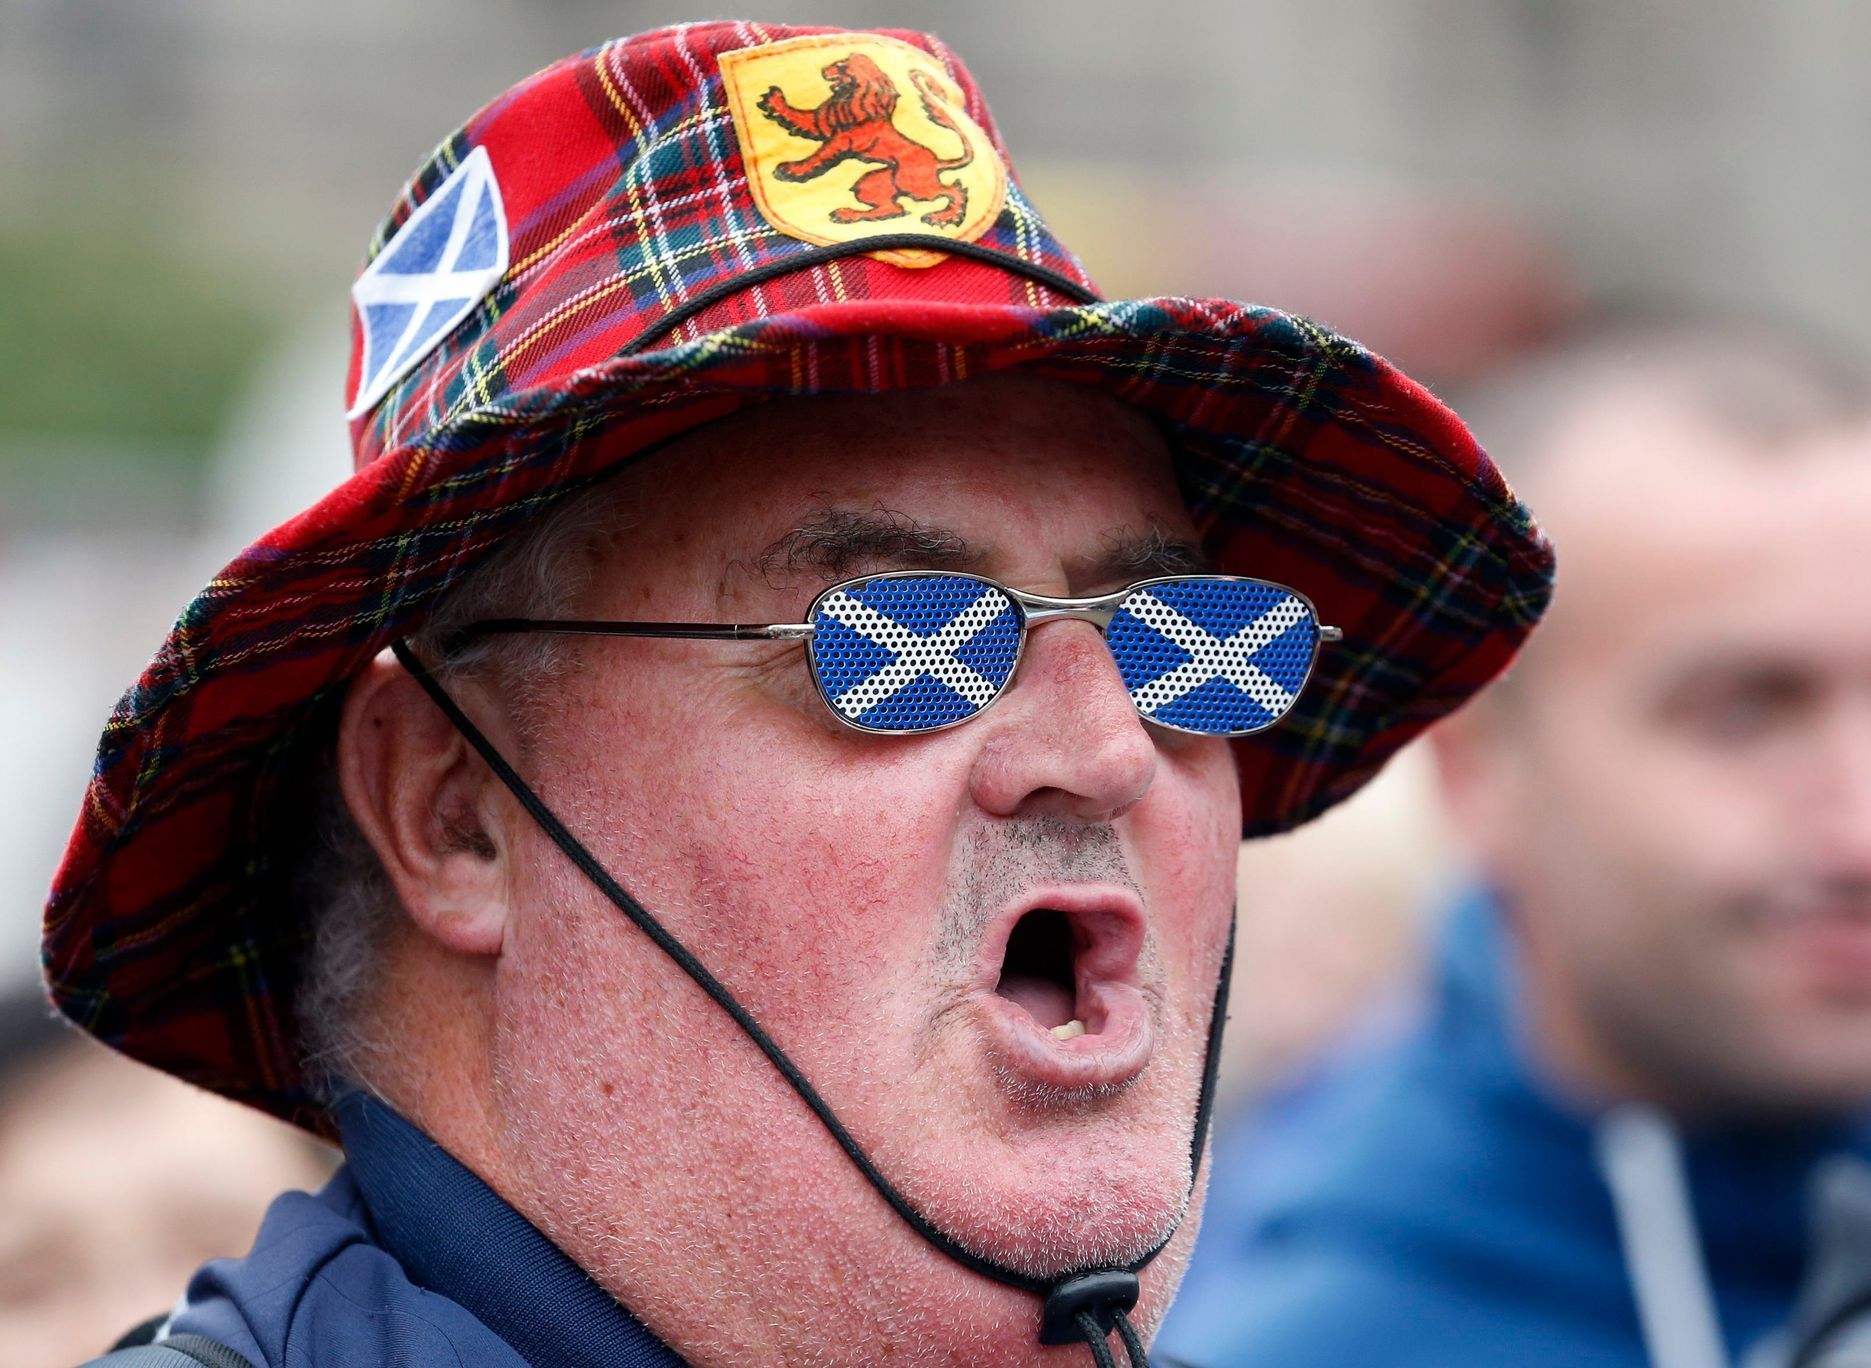 Zastánce skotské nezávislosti.